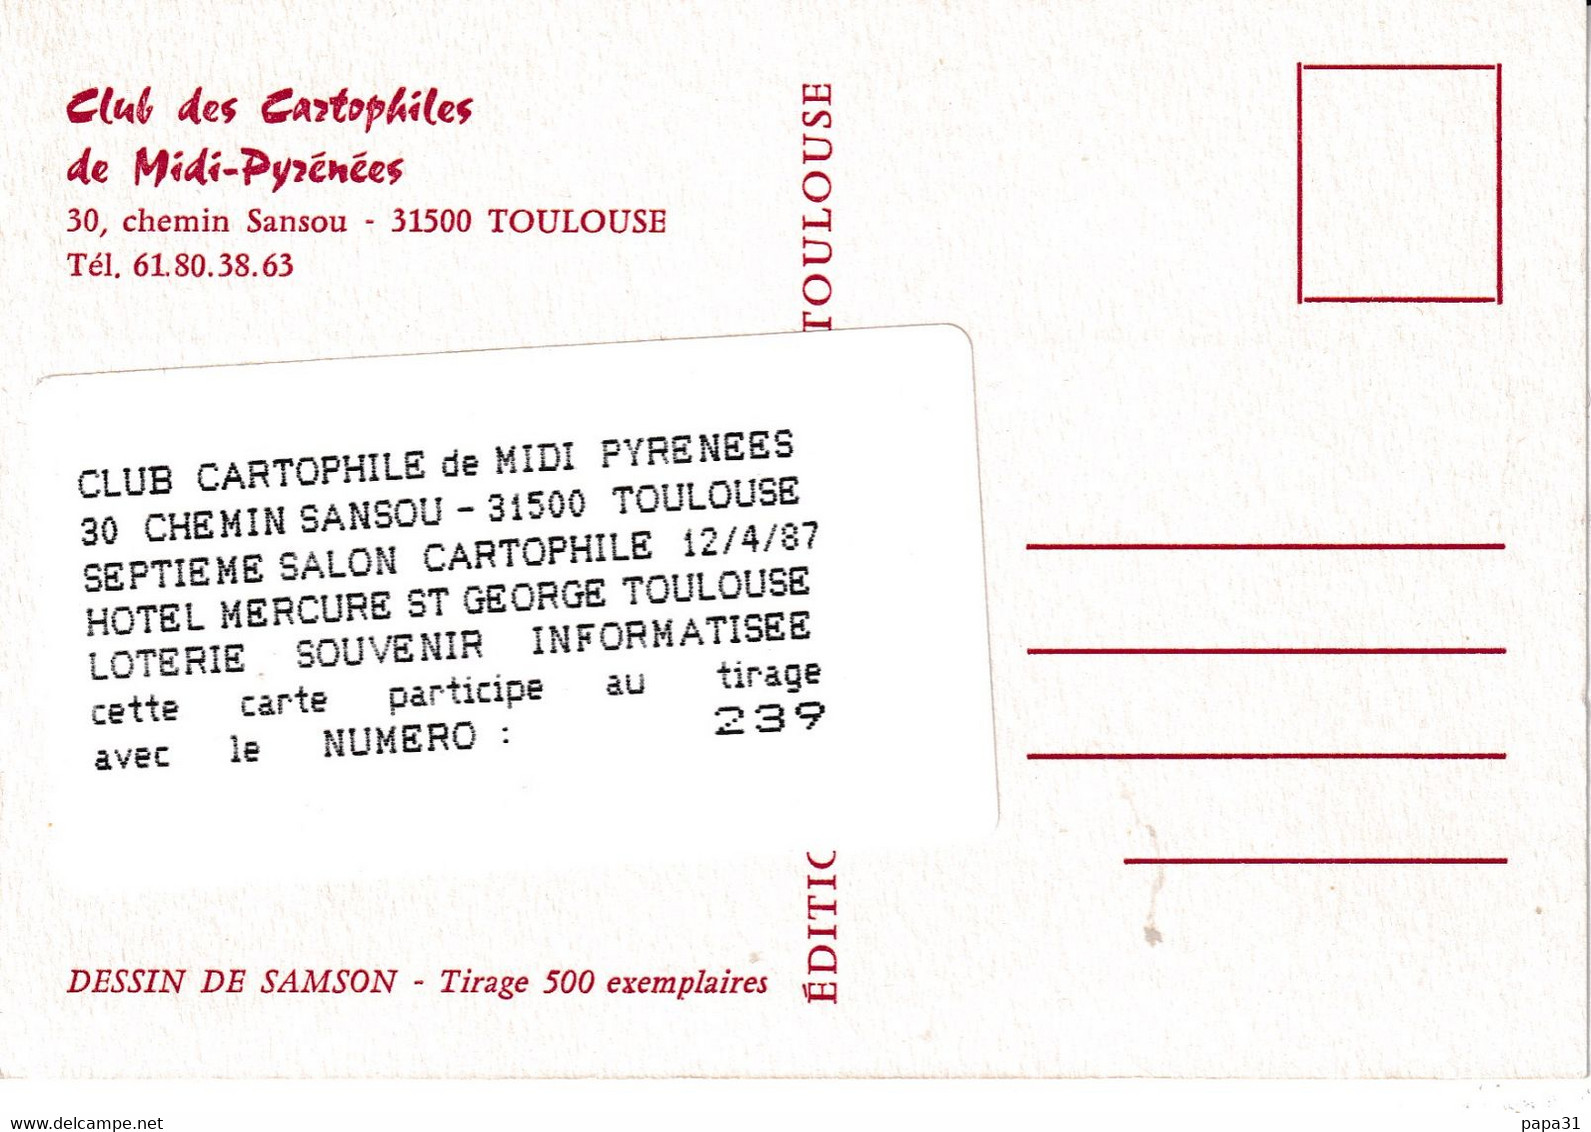 SALON DES CARTOPHILES  - TOULOUSE  MIDI PYTRNEES  1987 - Dessin De SAMSON  - Tirage 500 Exemplaires - Bourses & Salons De Collections